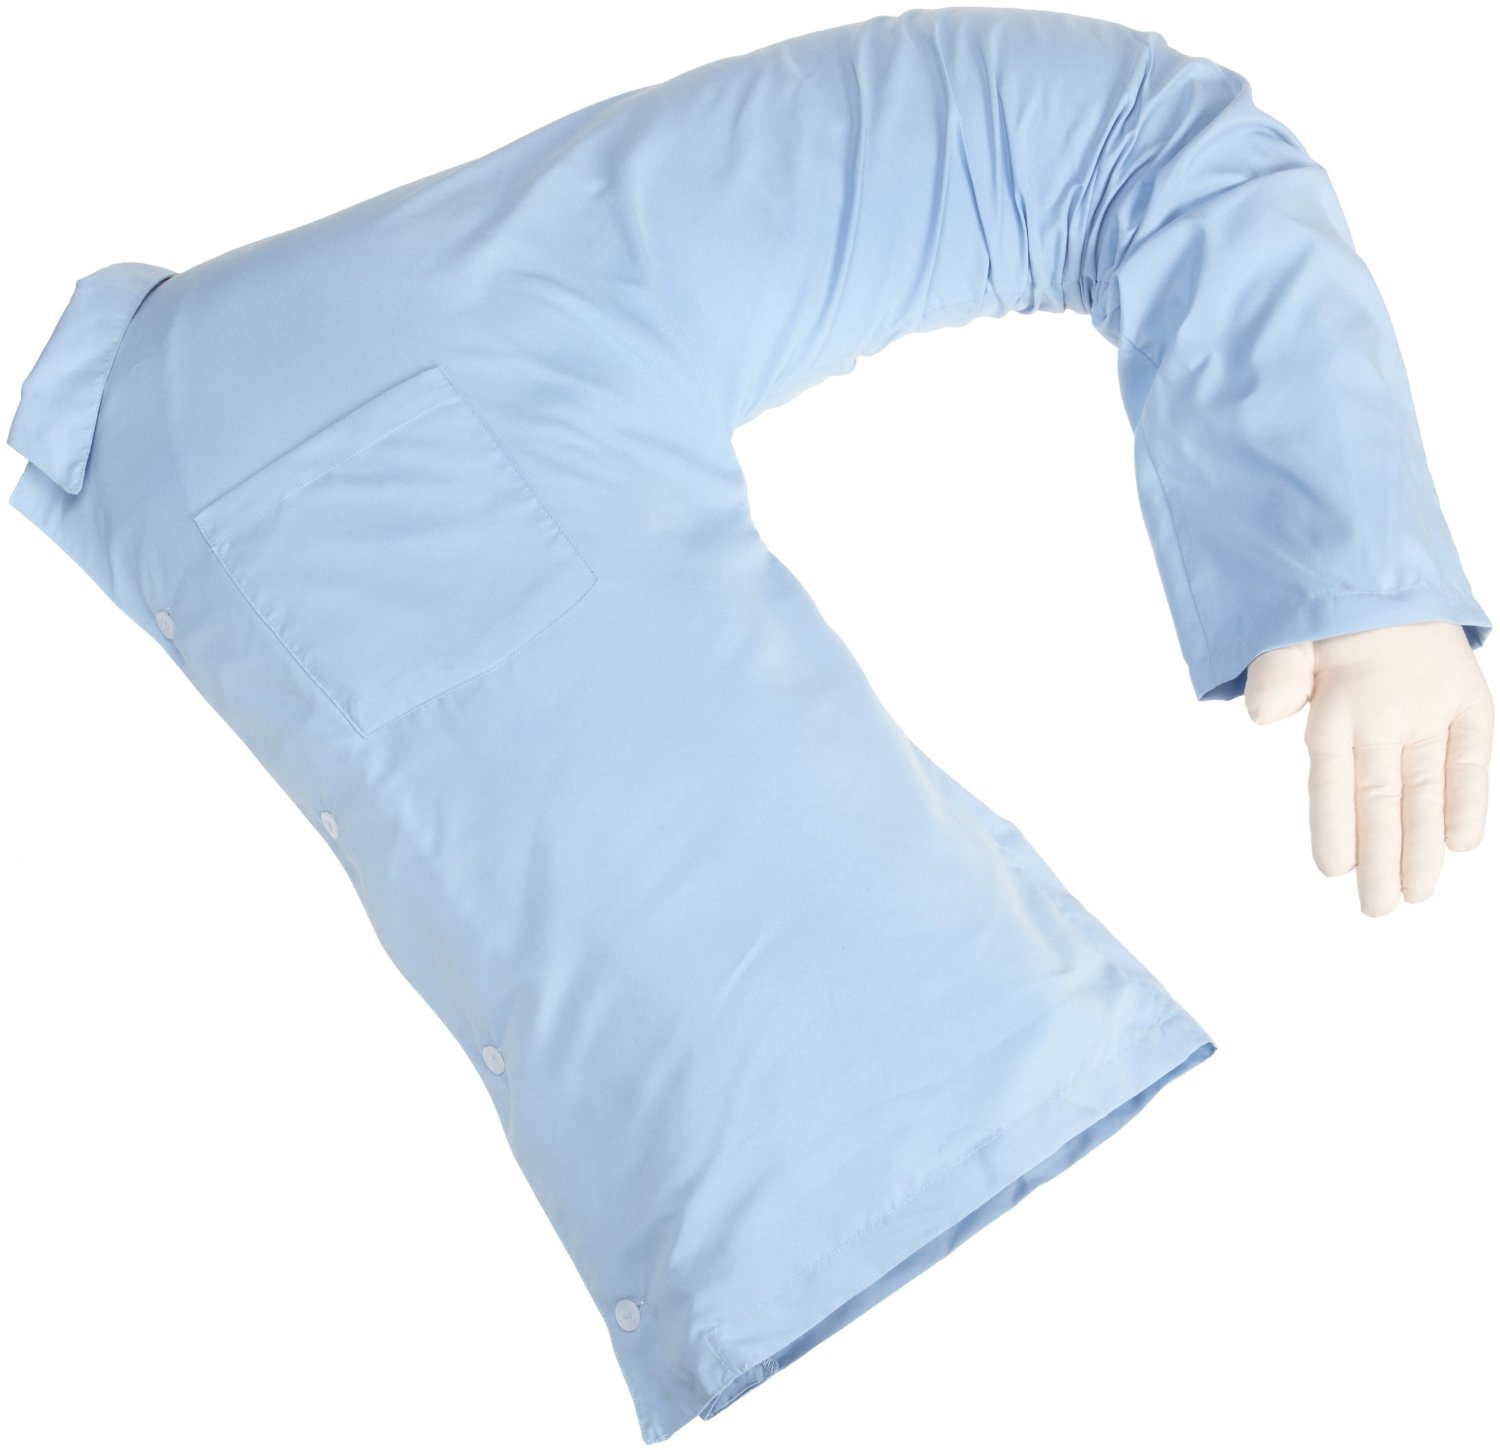 Deluxe Comfort Boyfriend Body Pillow